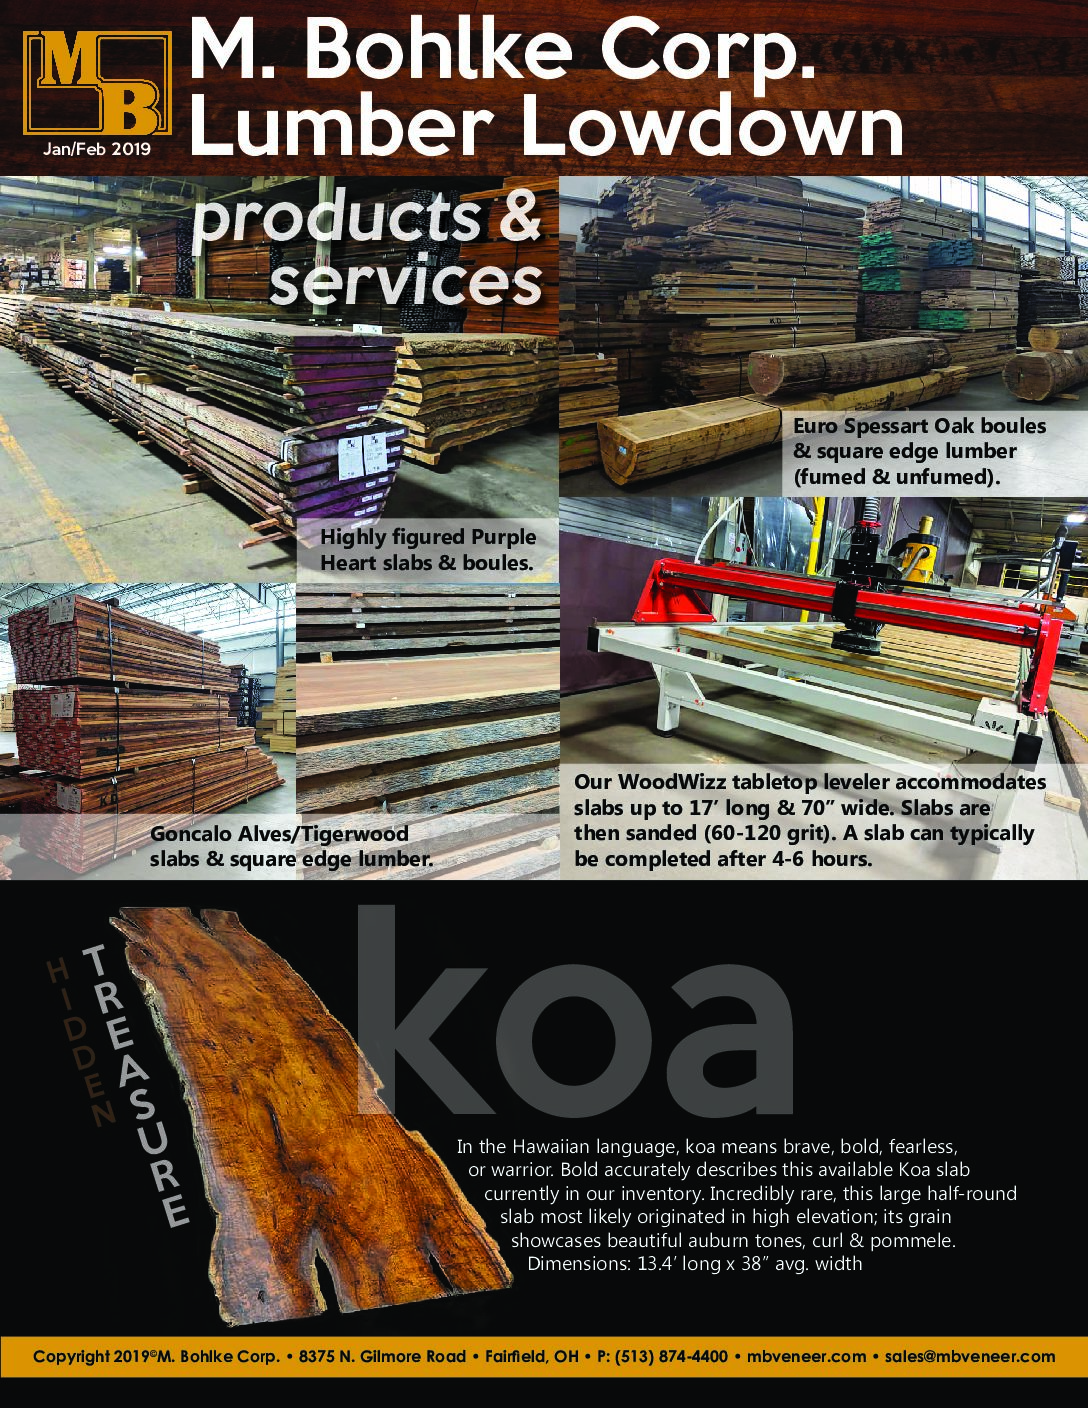 M. Bohlke Corp. Jan-Feb 2019 Lumber Newsletter.